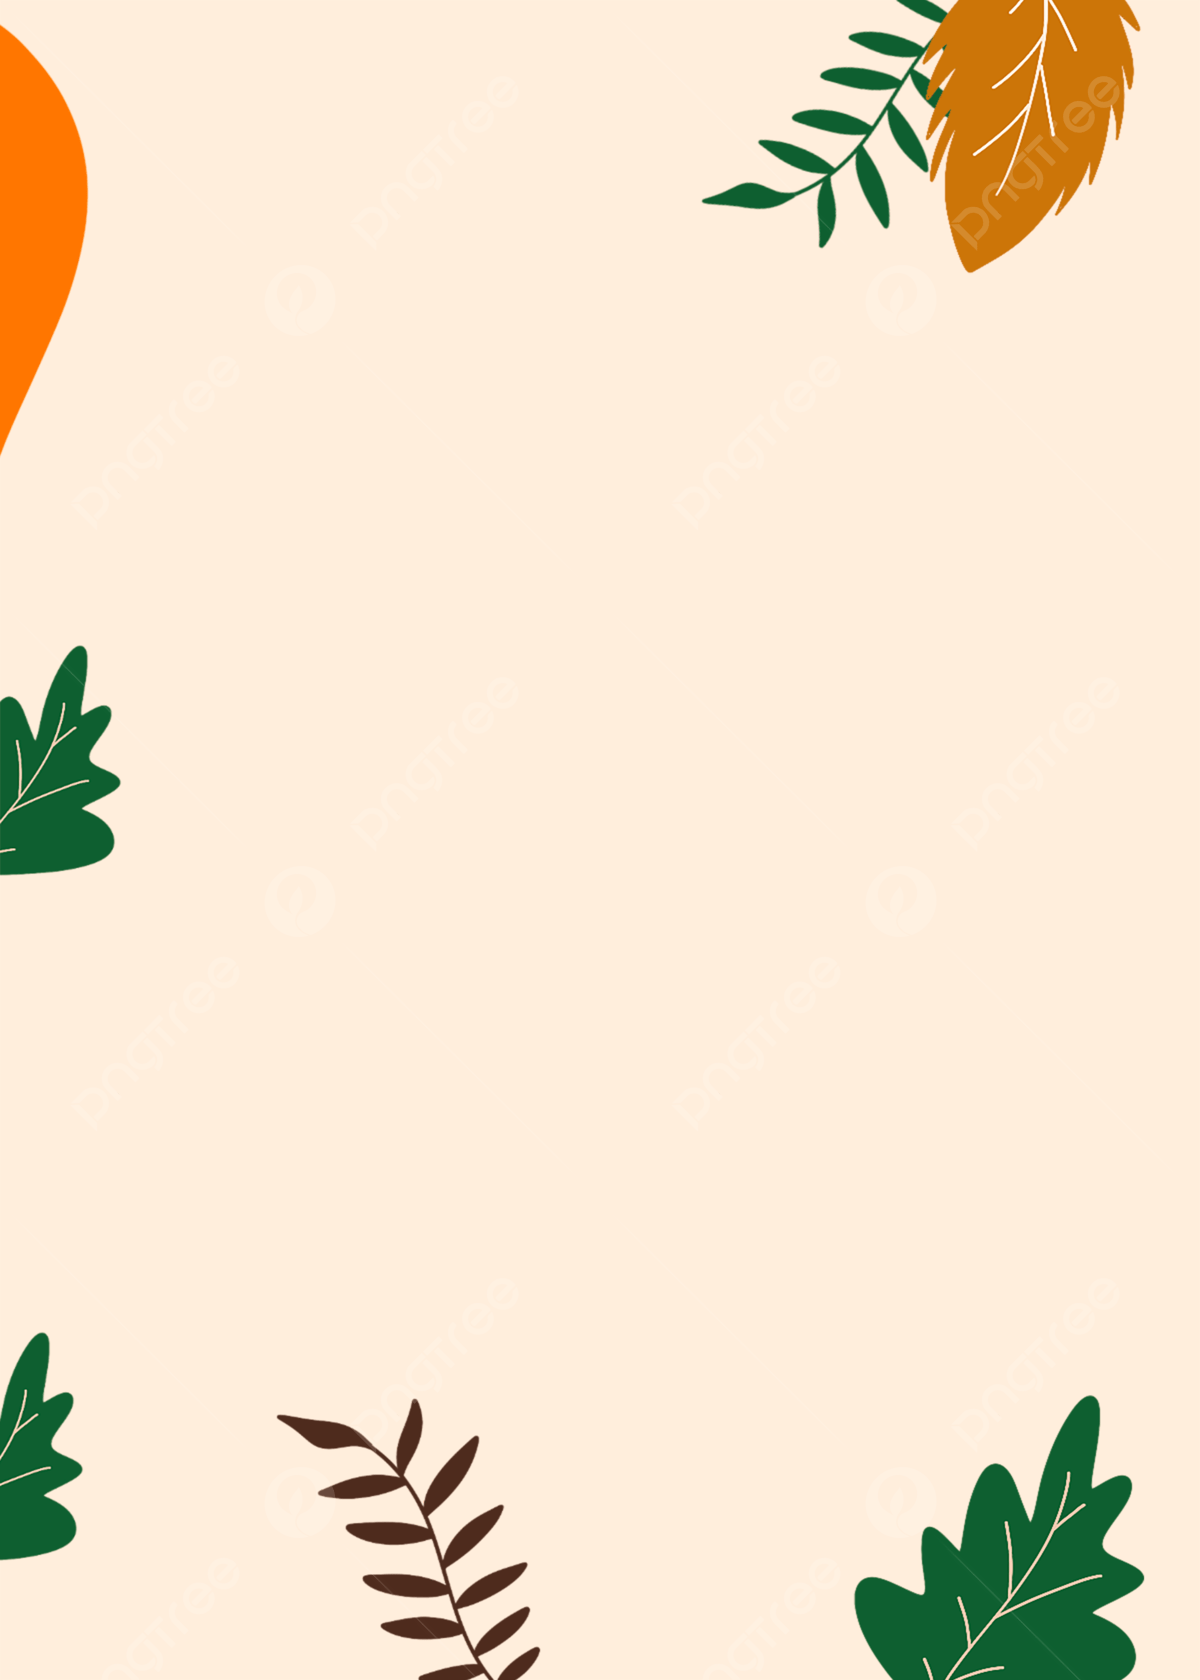 A leafy background with an orange balloon - Minimalist beige